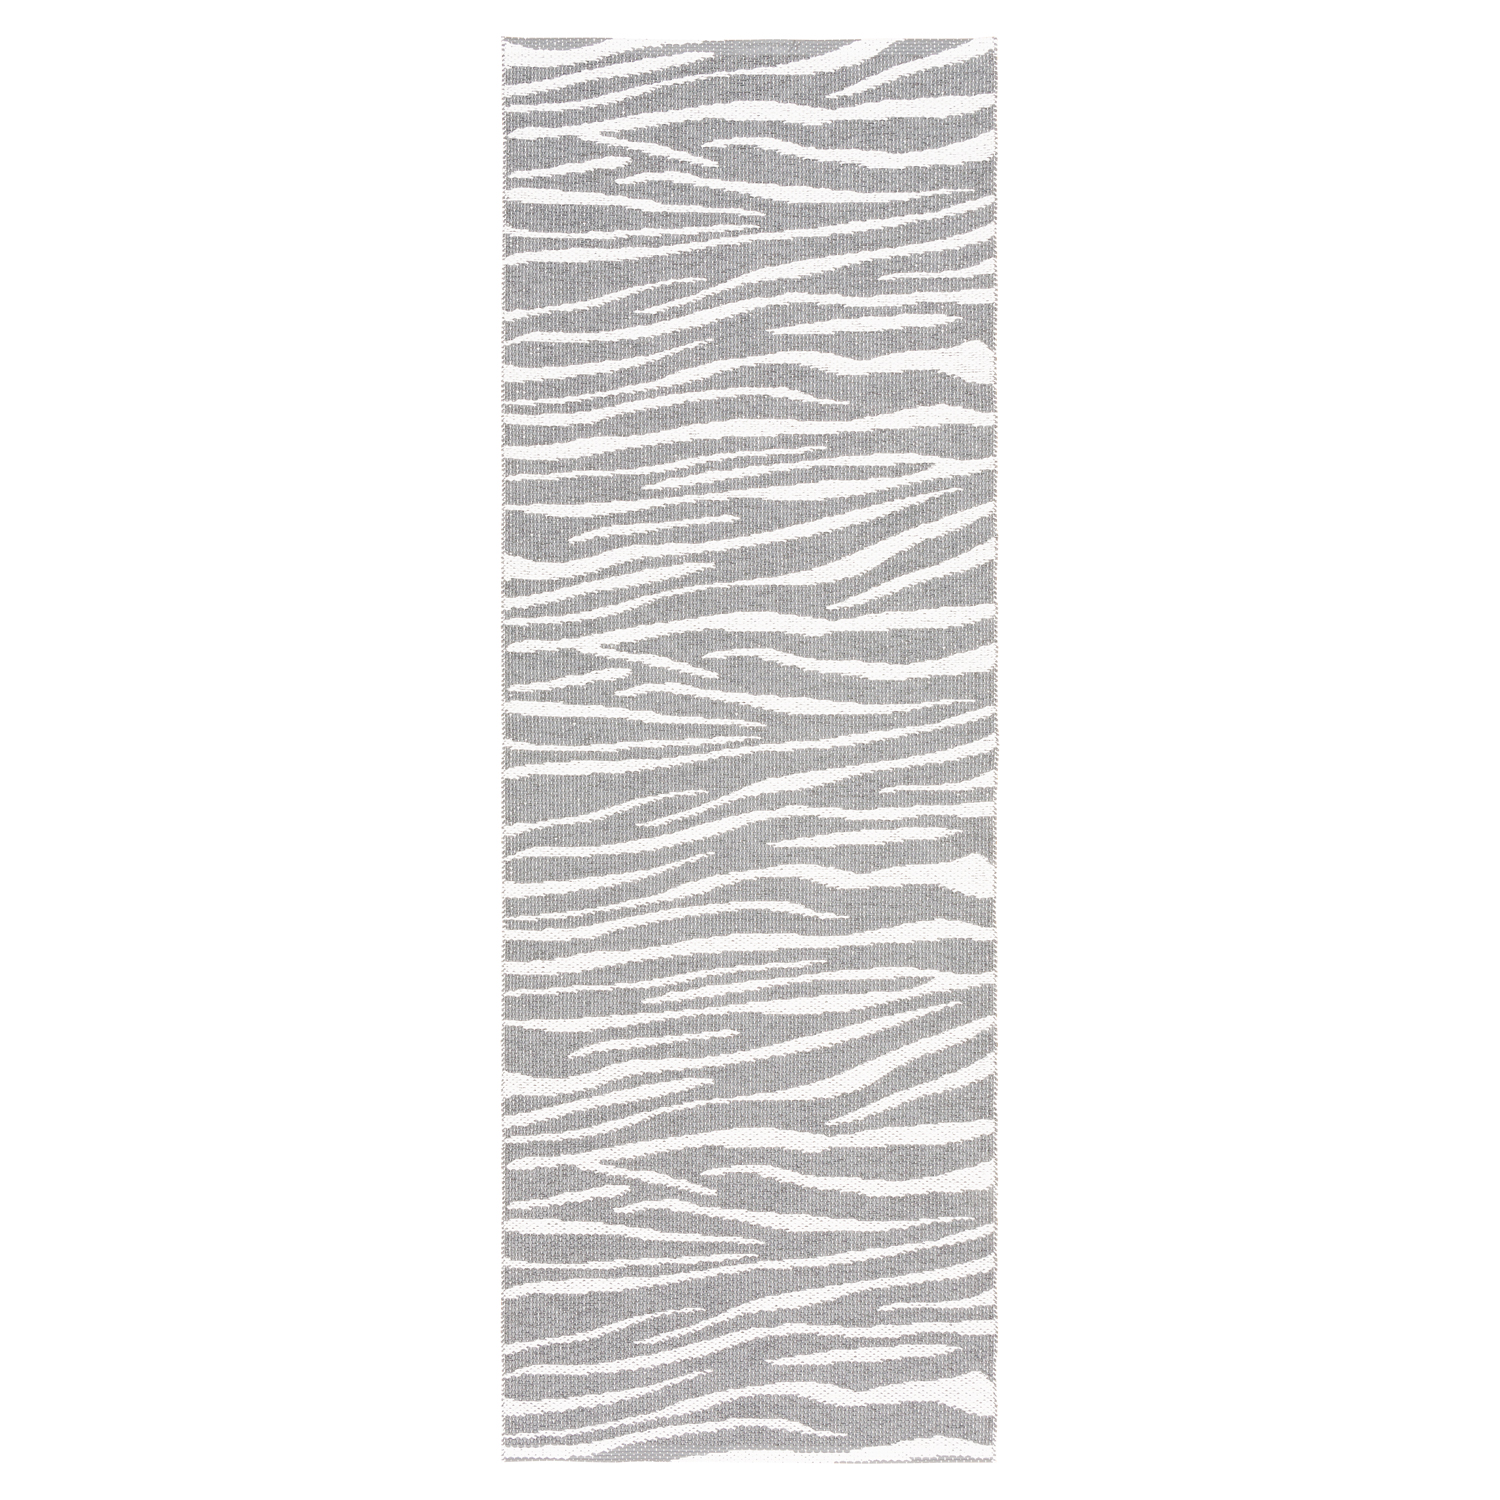 Horredsmattan Teppich Zebra Grey für Innen und Aussen Made in Sweden since 1956 Hohe UV-Beständigkeit Pflegeleicht